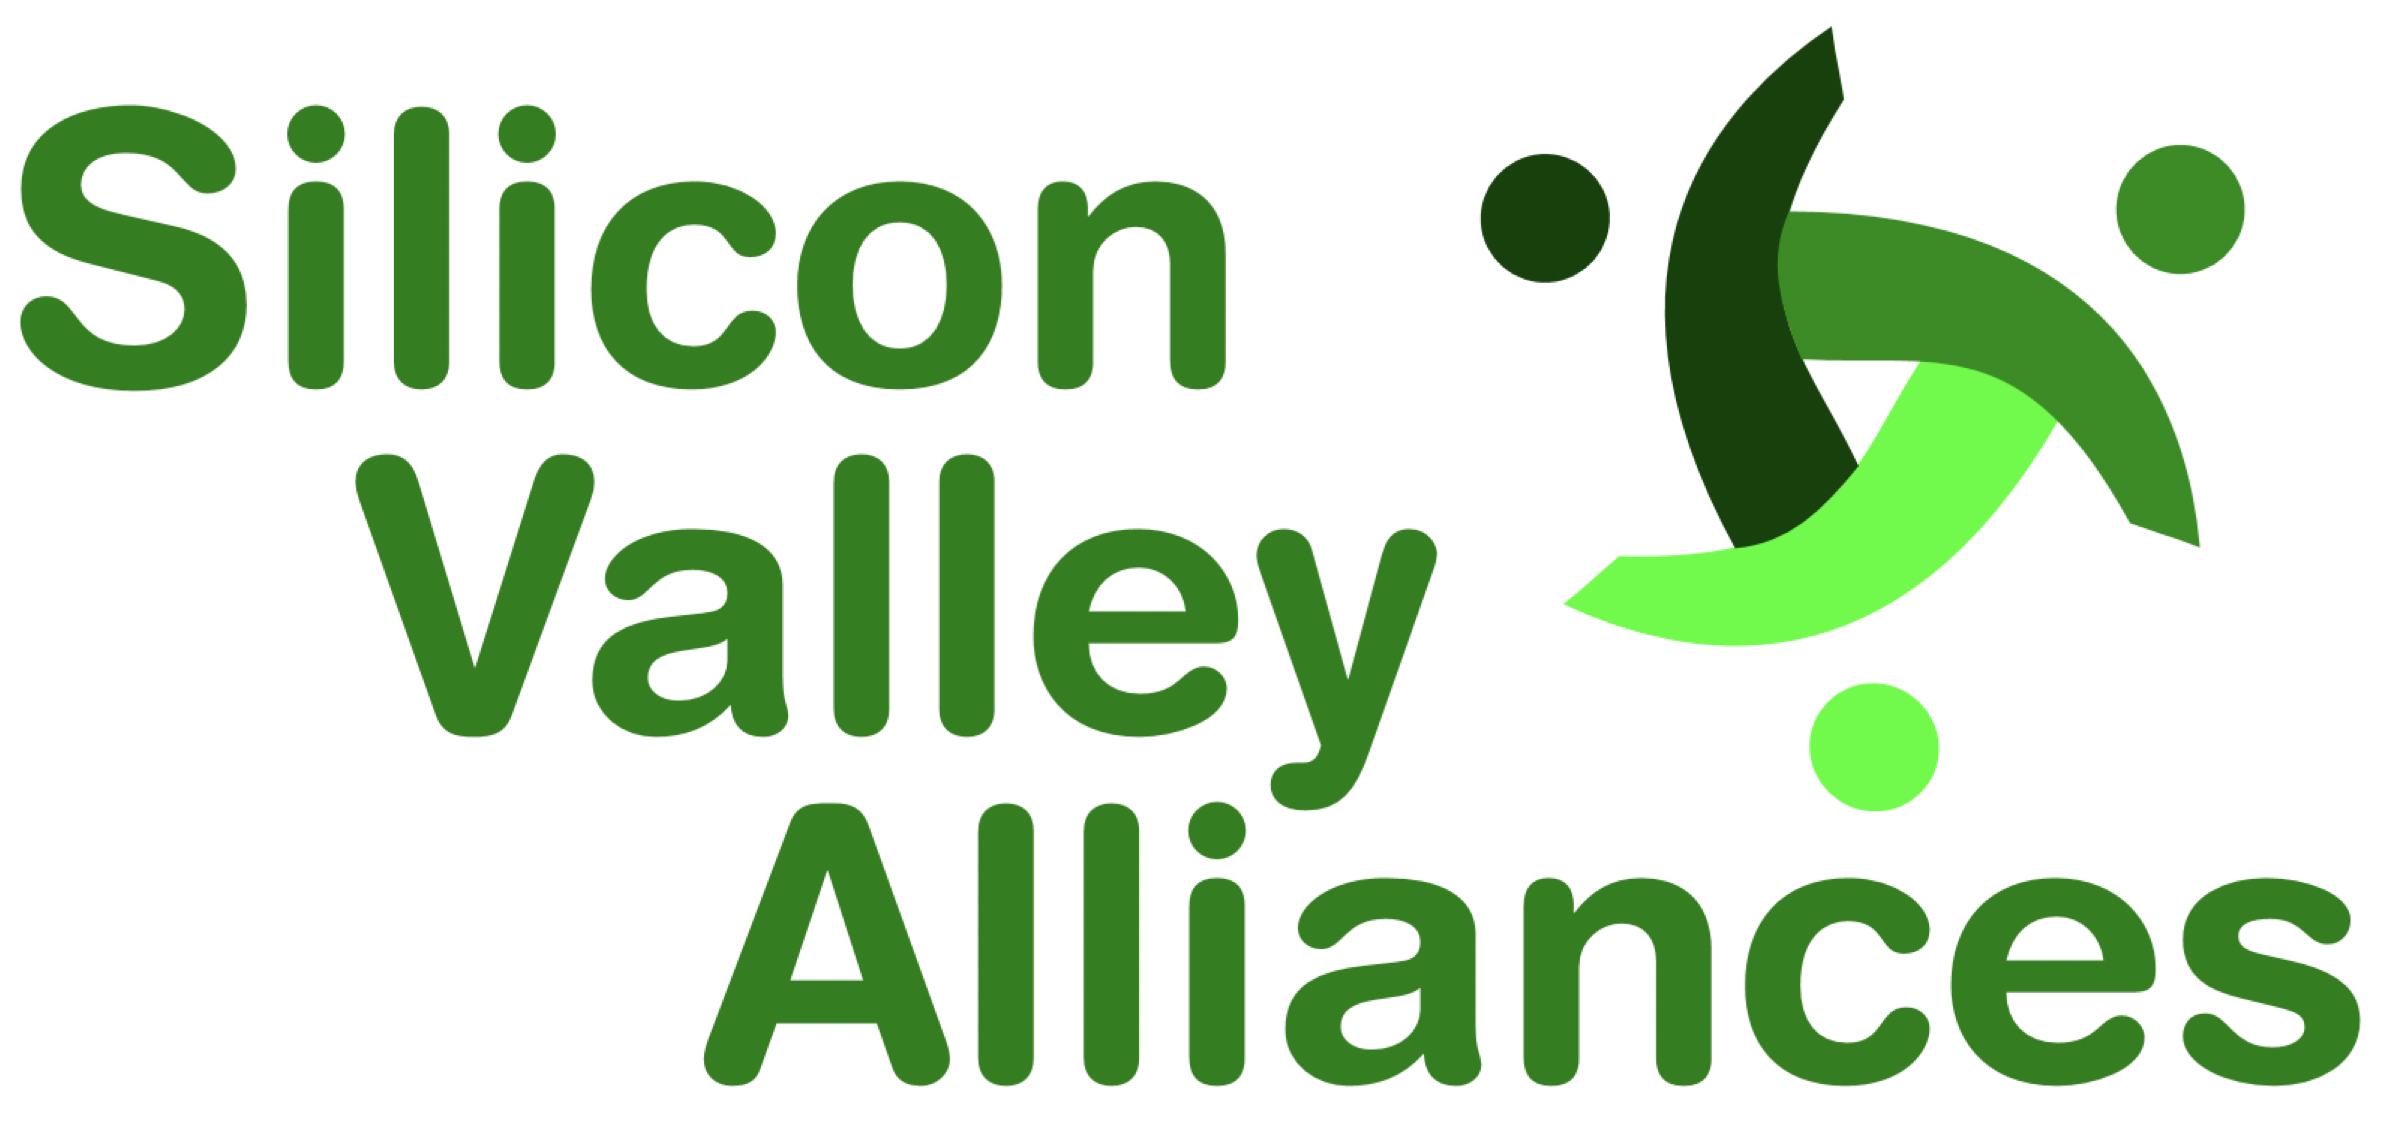 Silicon Valley Alliances